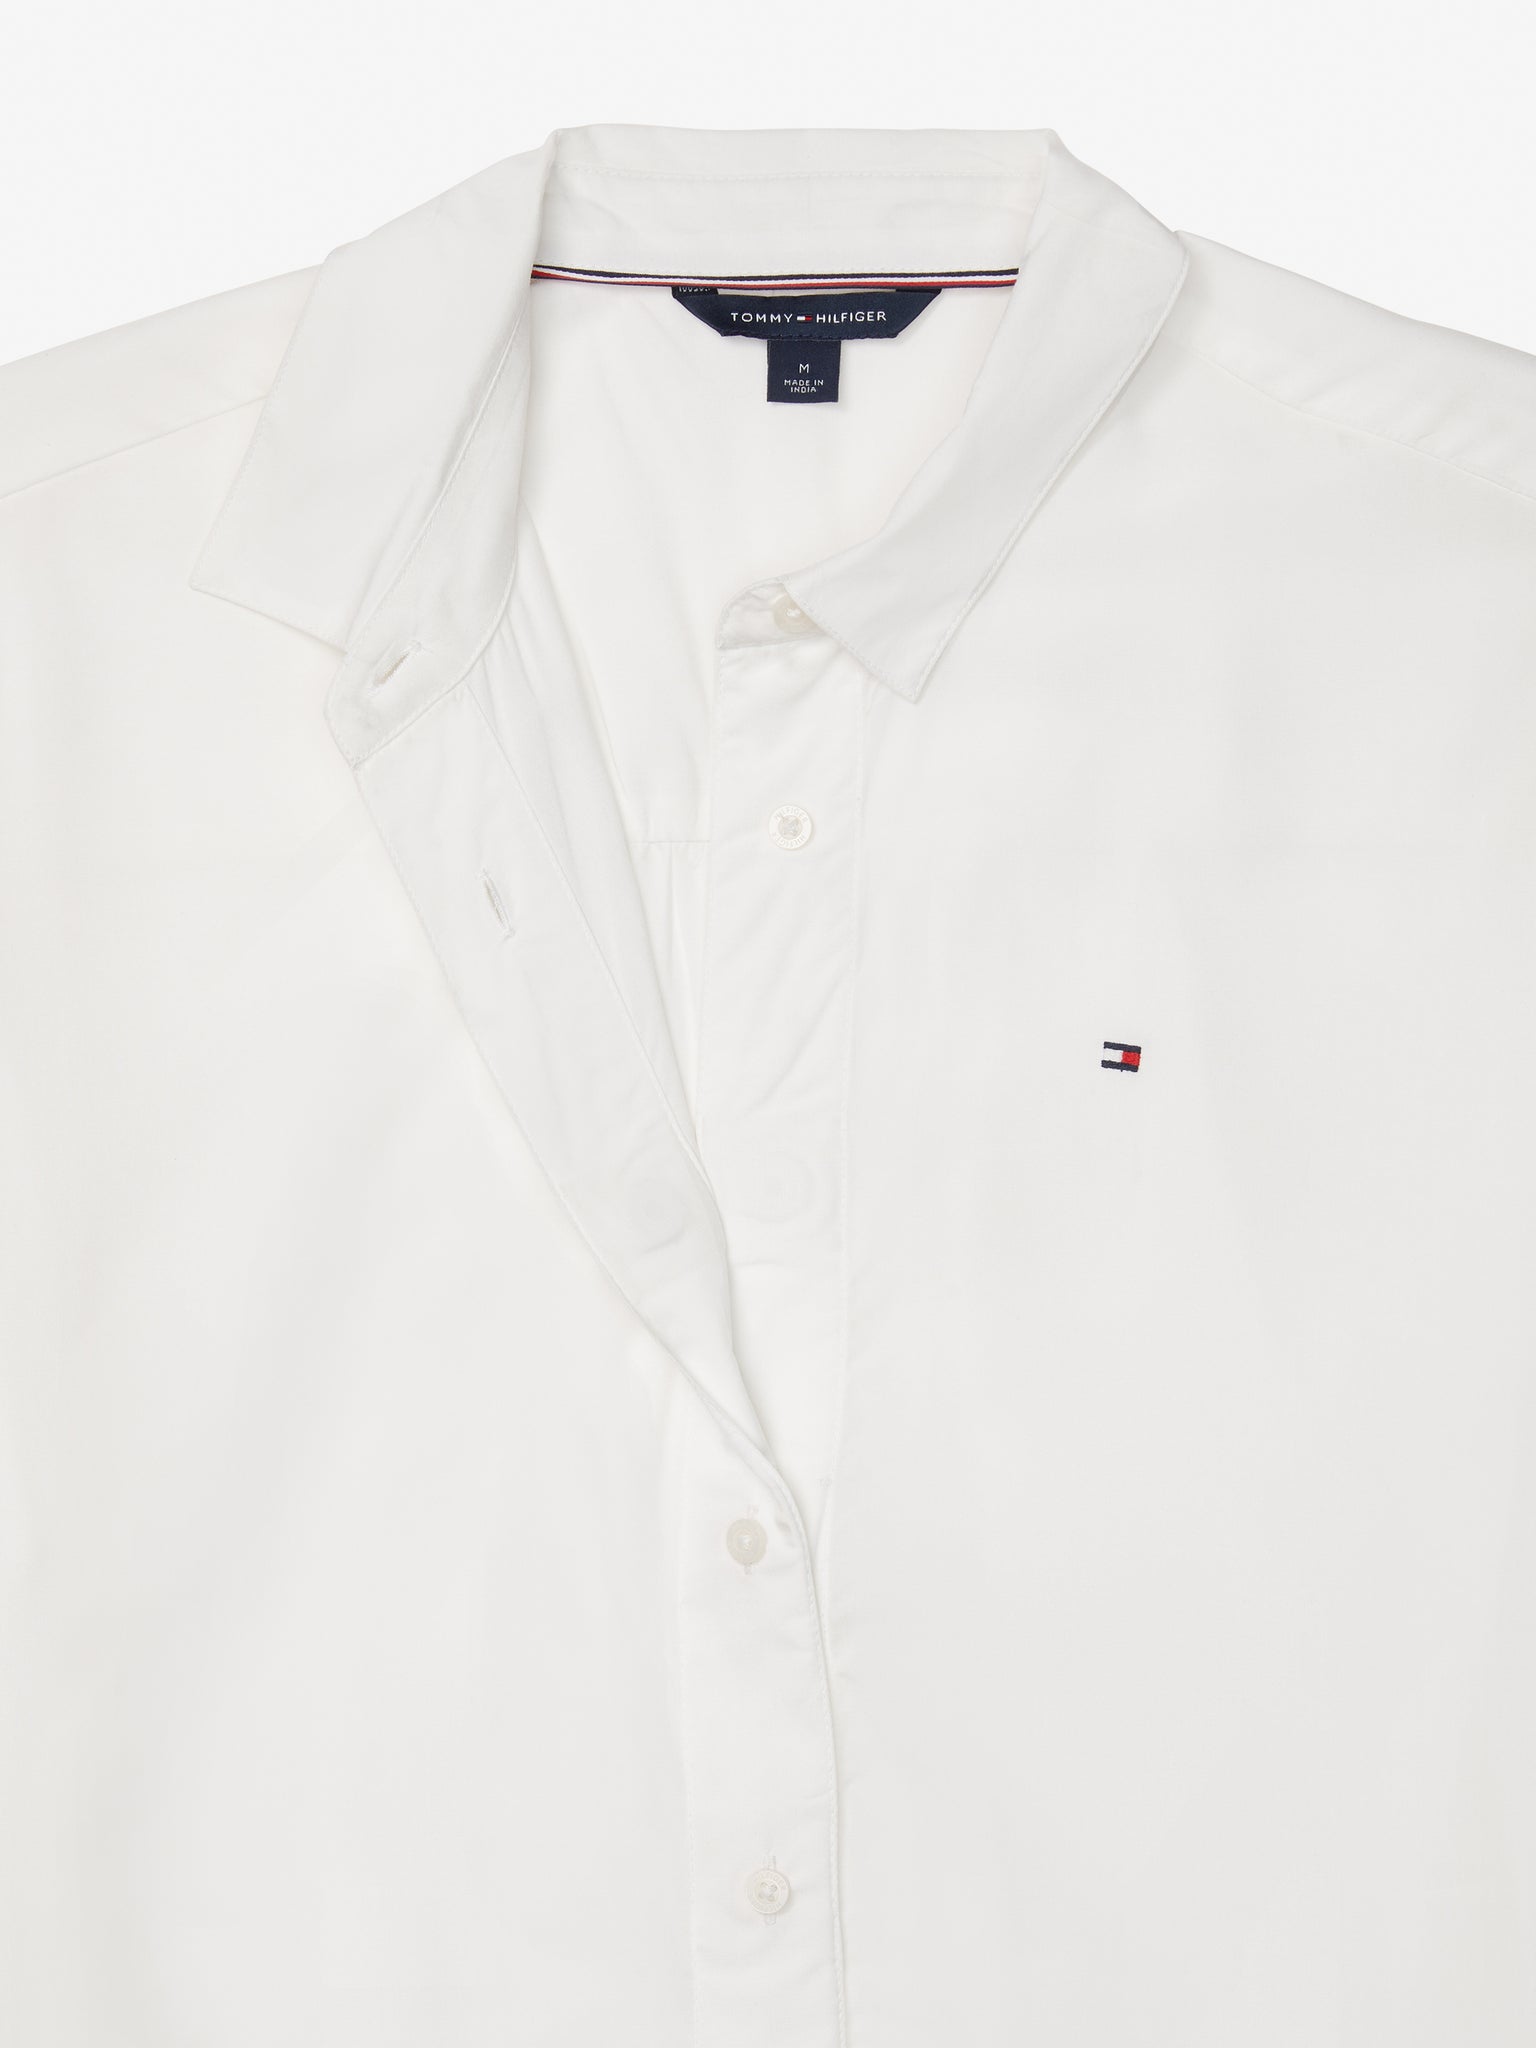 Everg Shirt - White